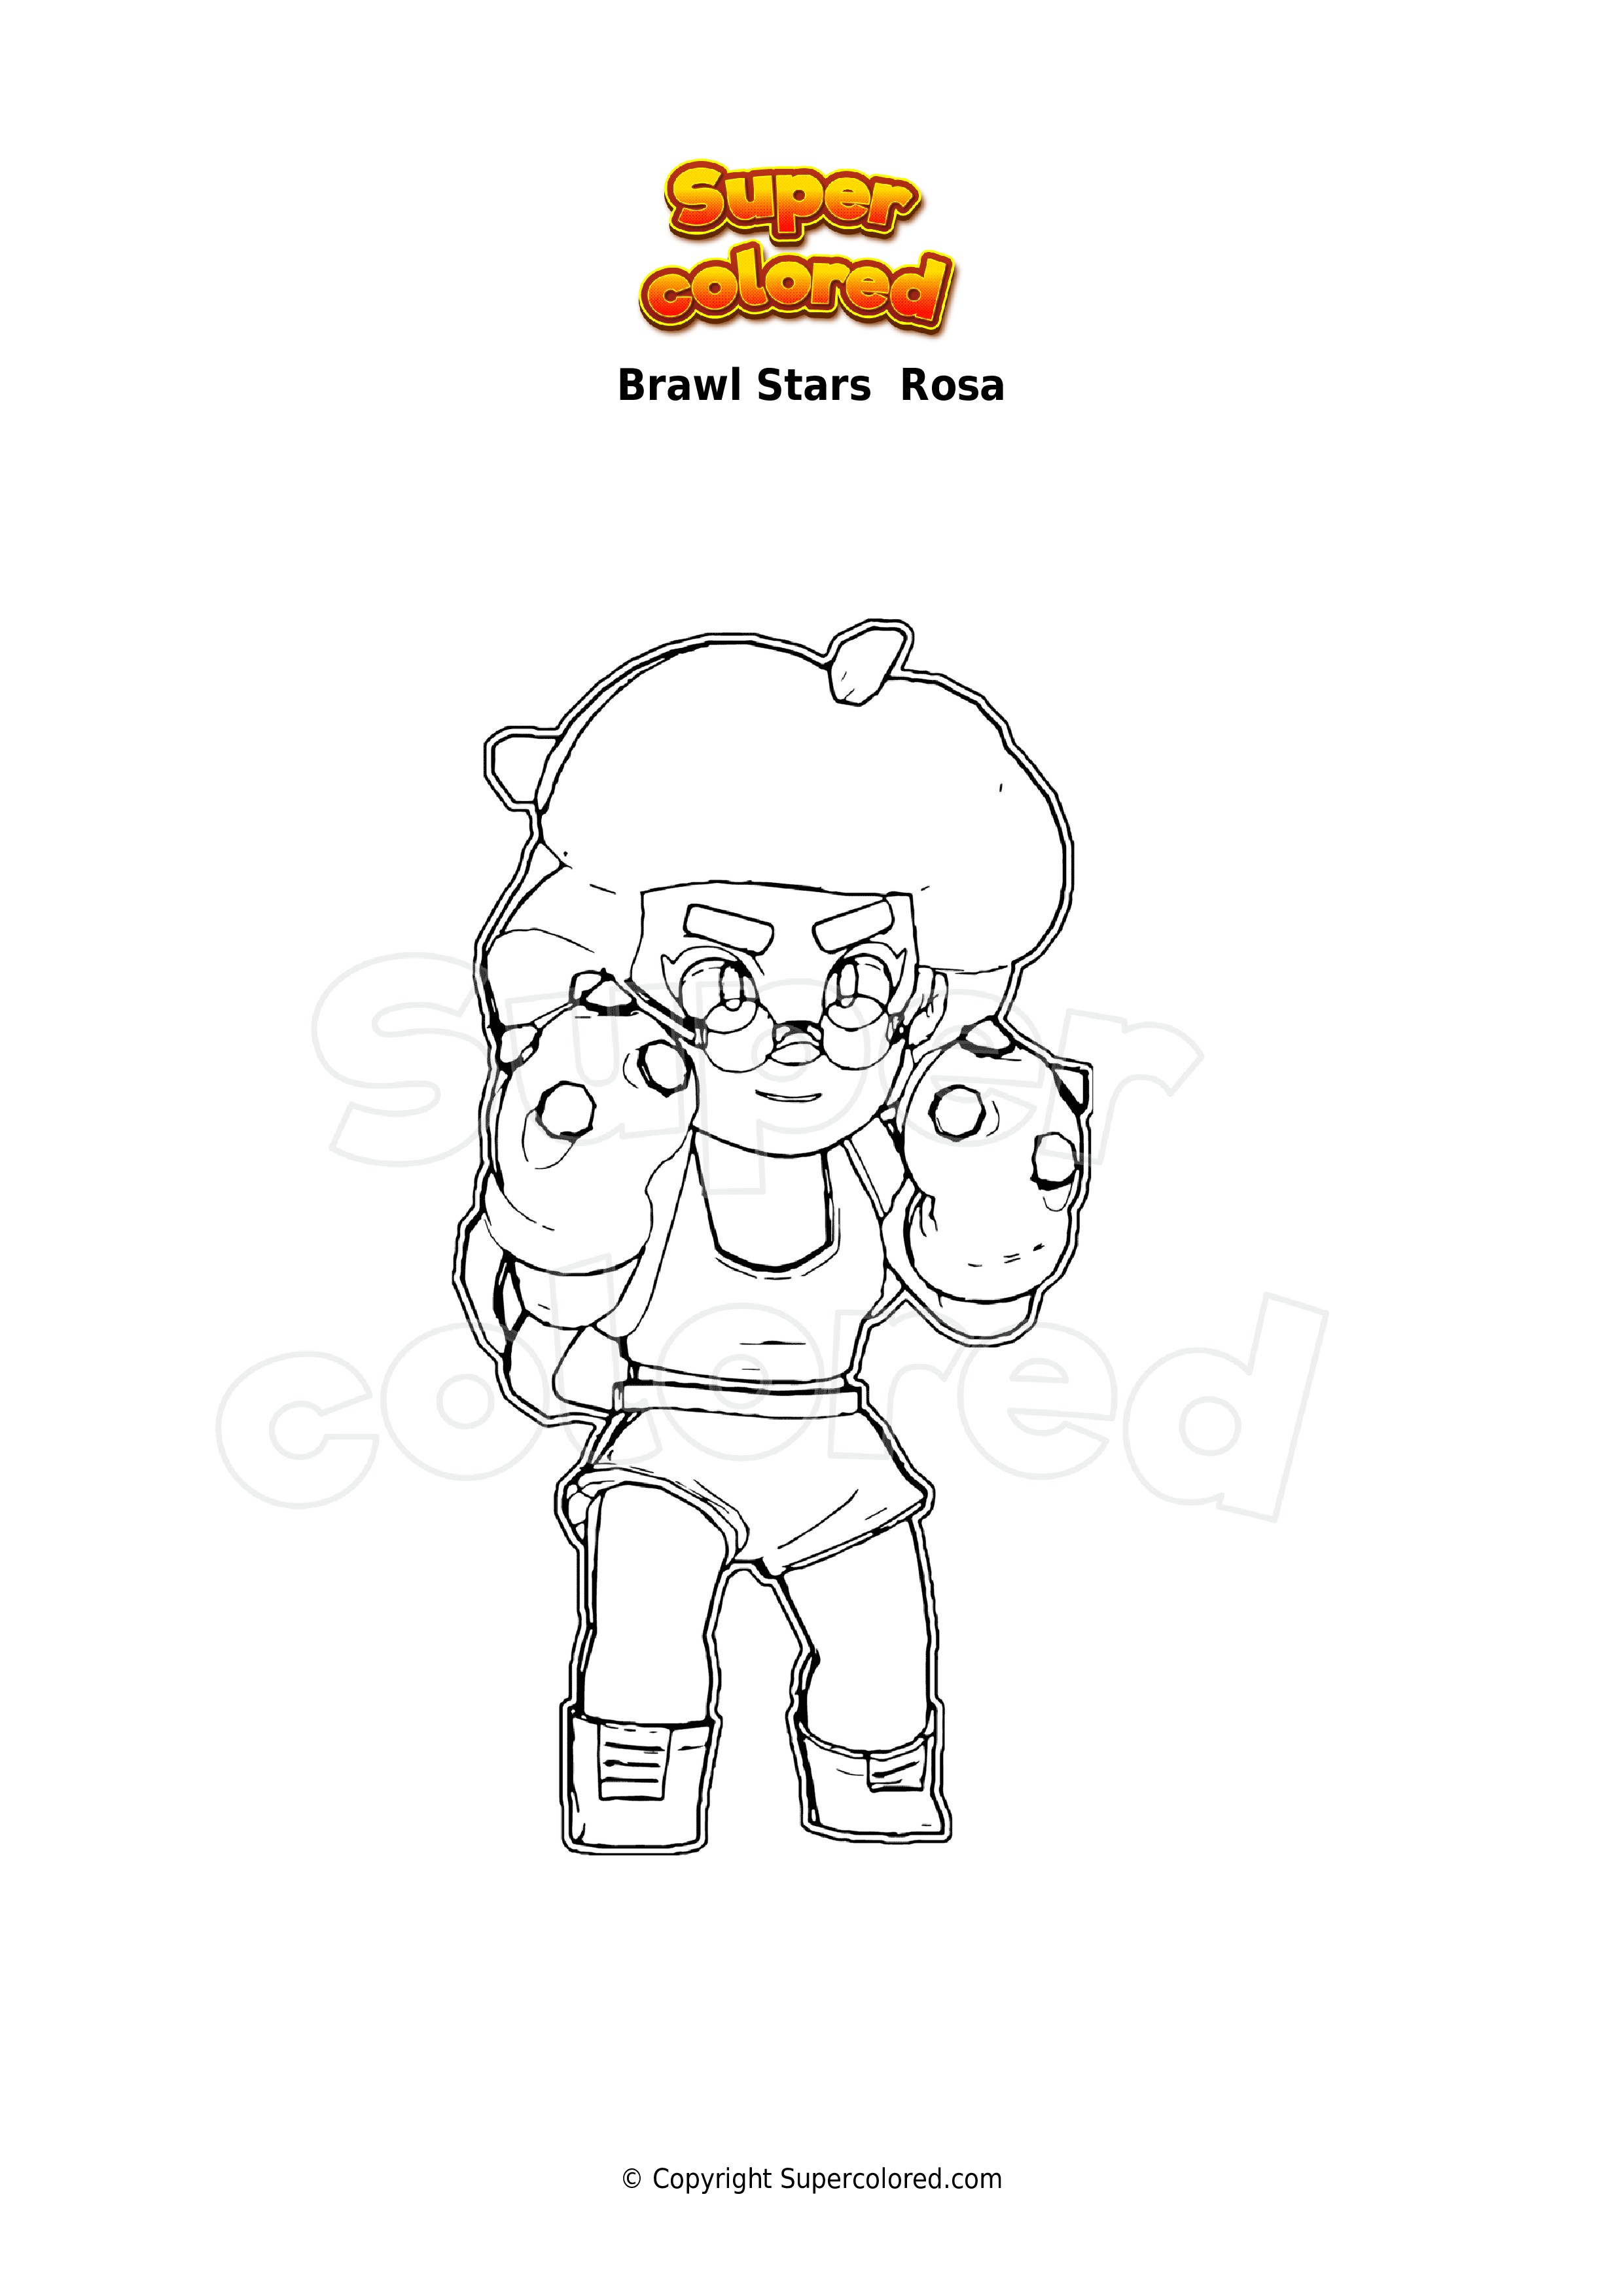 Coloriage Brawl Stars Rosa Supercolored Com - dessin de brawl stars personnage rosa